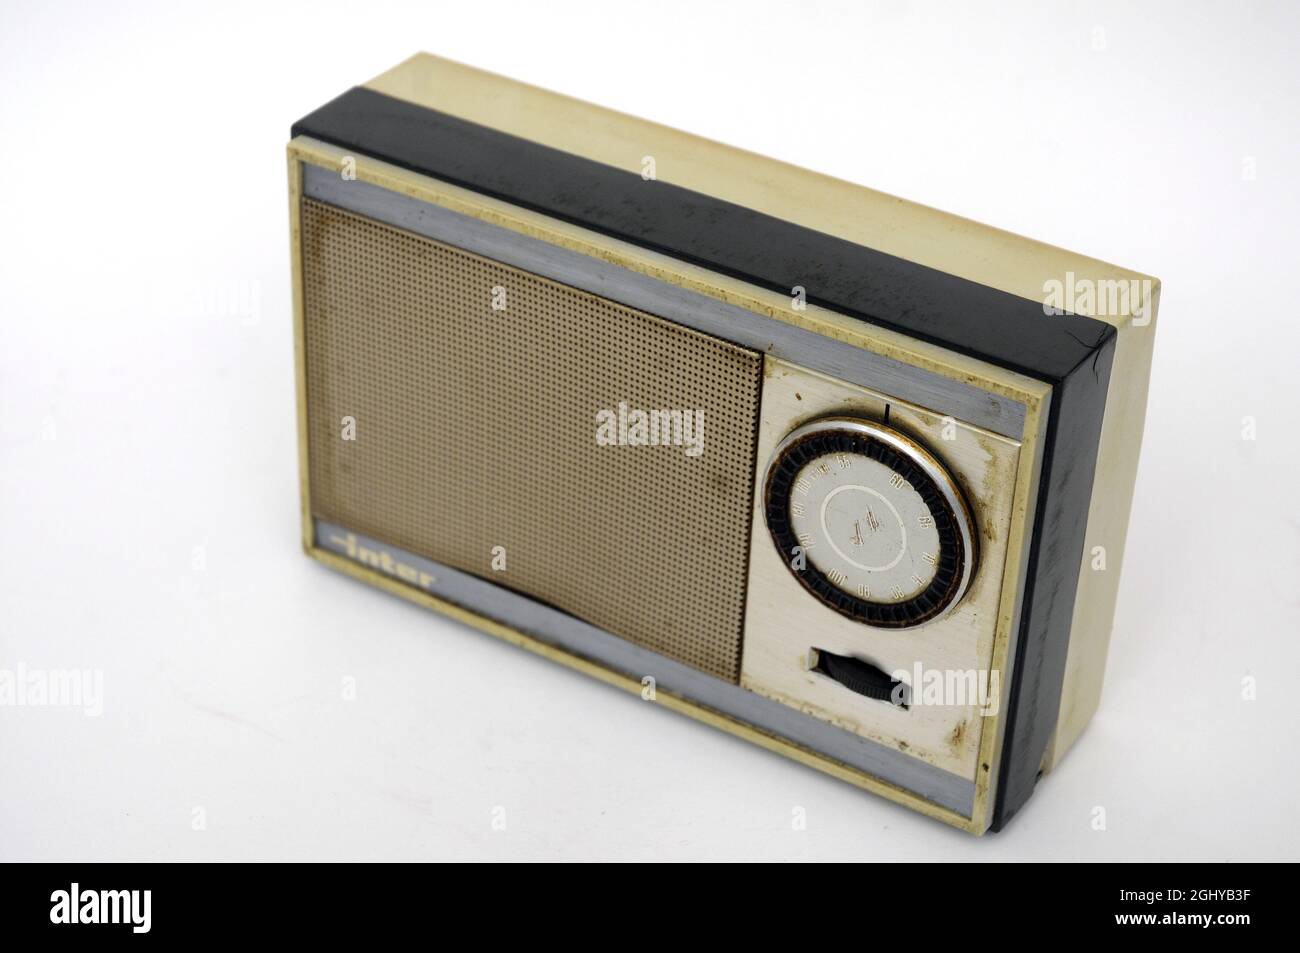 Radio, transistor, radio, vintage, second hand, used, vintage object, 60s, pocket radio, Stock Photo